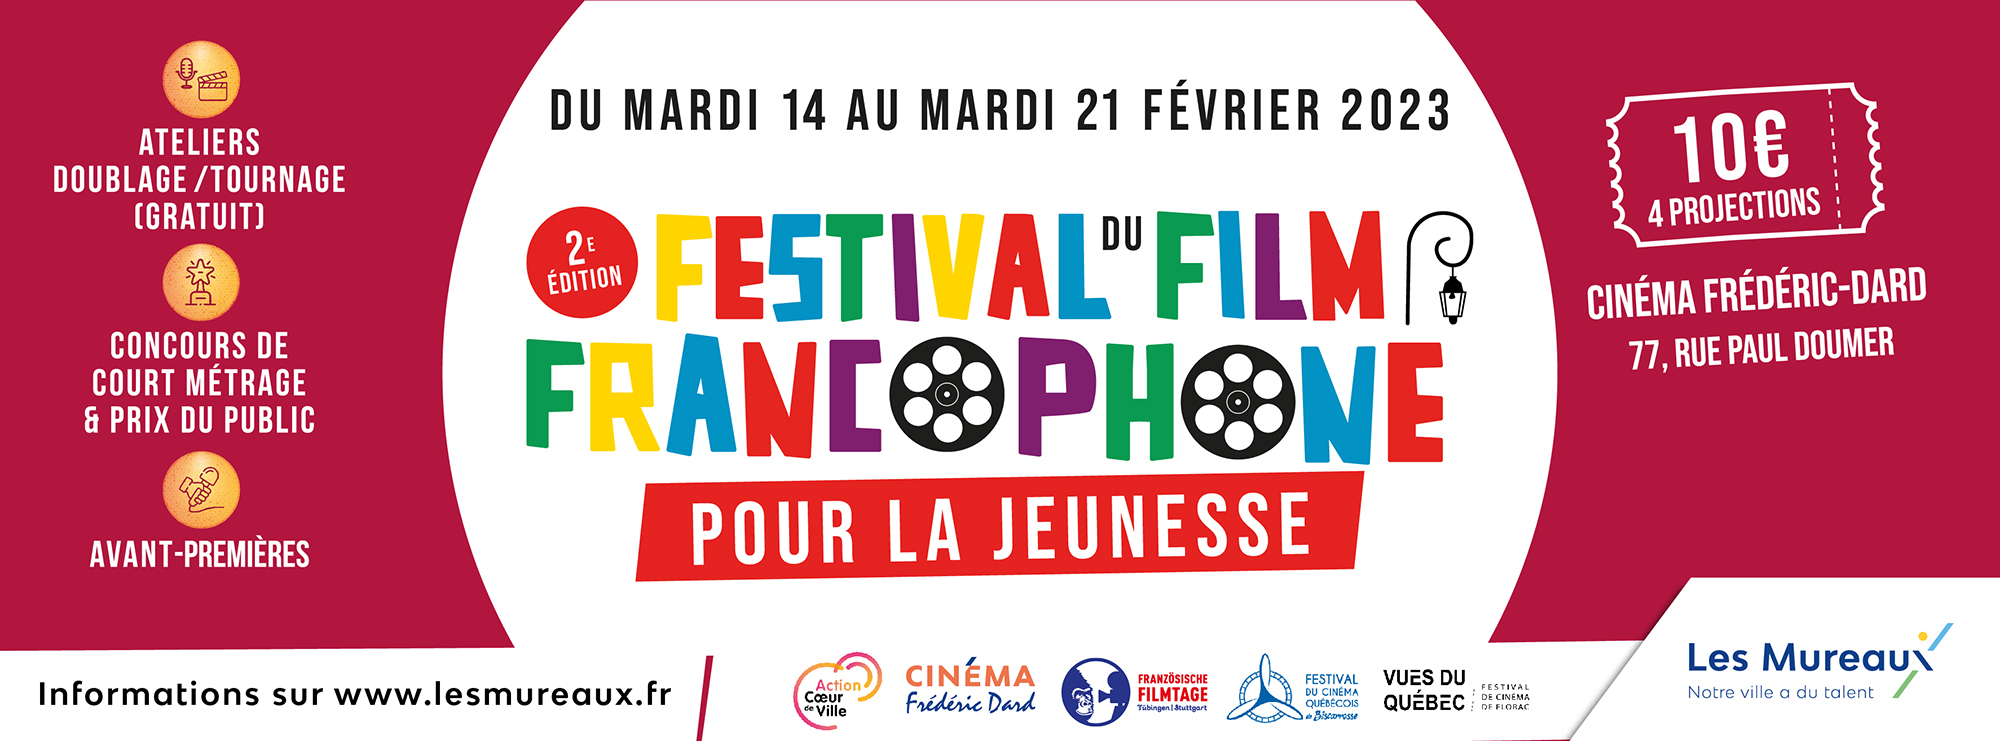 Festival du Film francophone pour la jeunesse 2023